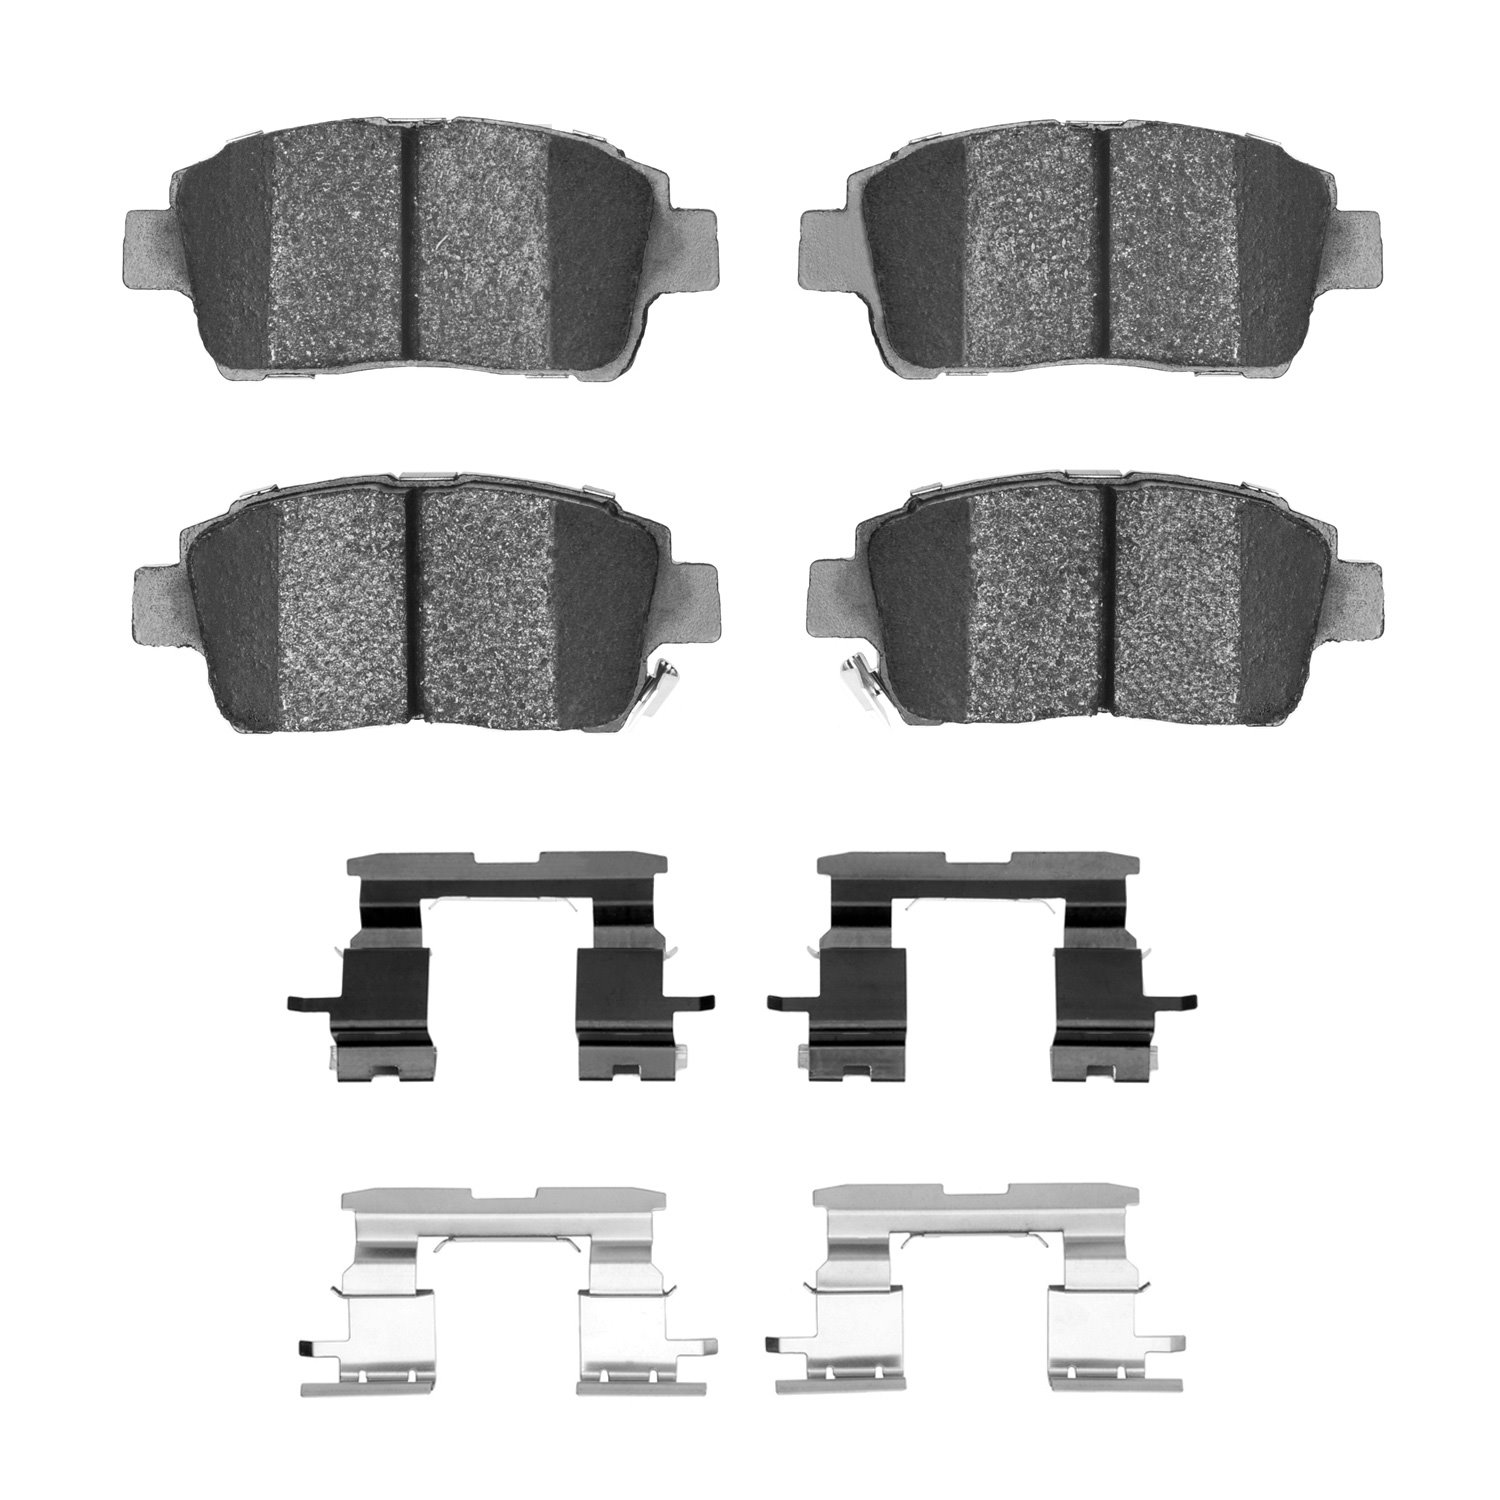 1310-0822-01 3000-Series Ceramic Brake Pads & Hardware Kit, 2000-2015 Lexus/Toyota/Scion, Position: Front